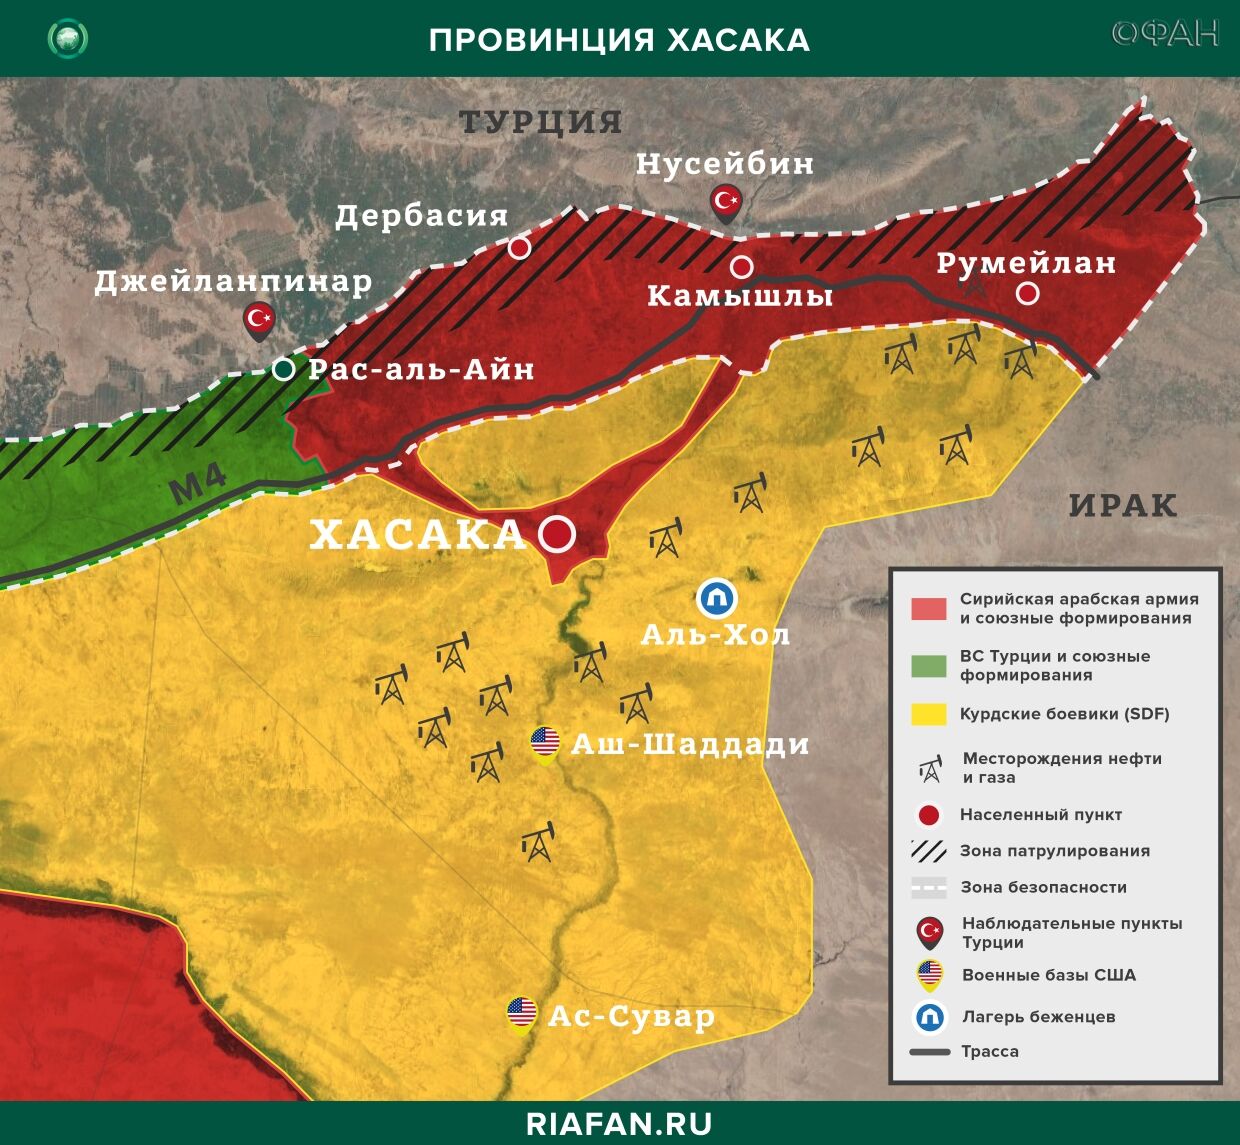 Syrie résultats quotidiens pour 20 Mars 06.00: рост дезертирства среди курдских боевиков, 2 турецких солдата погибли при взрывах в Идлибе